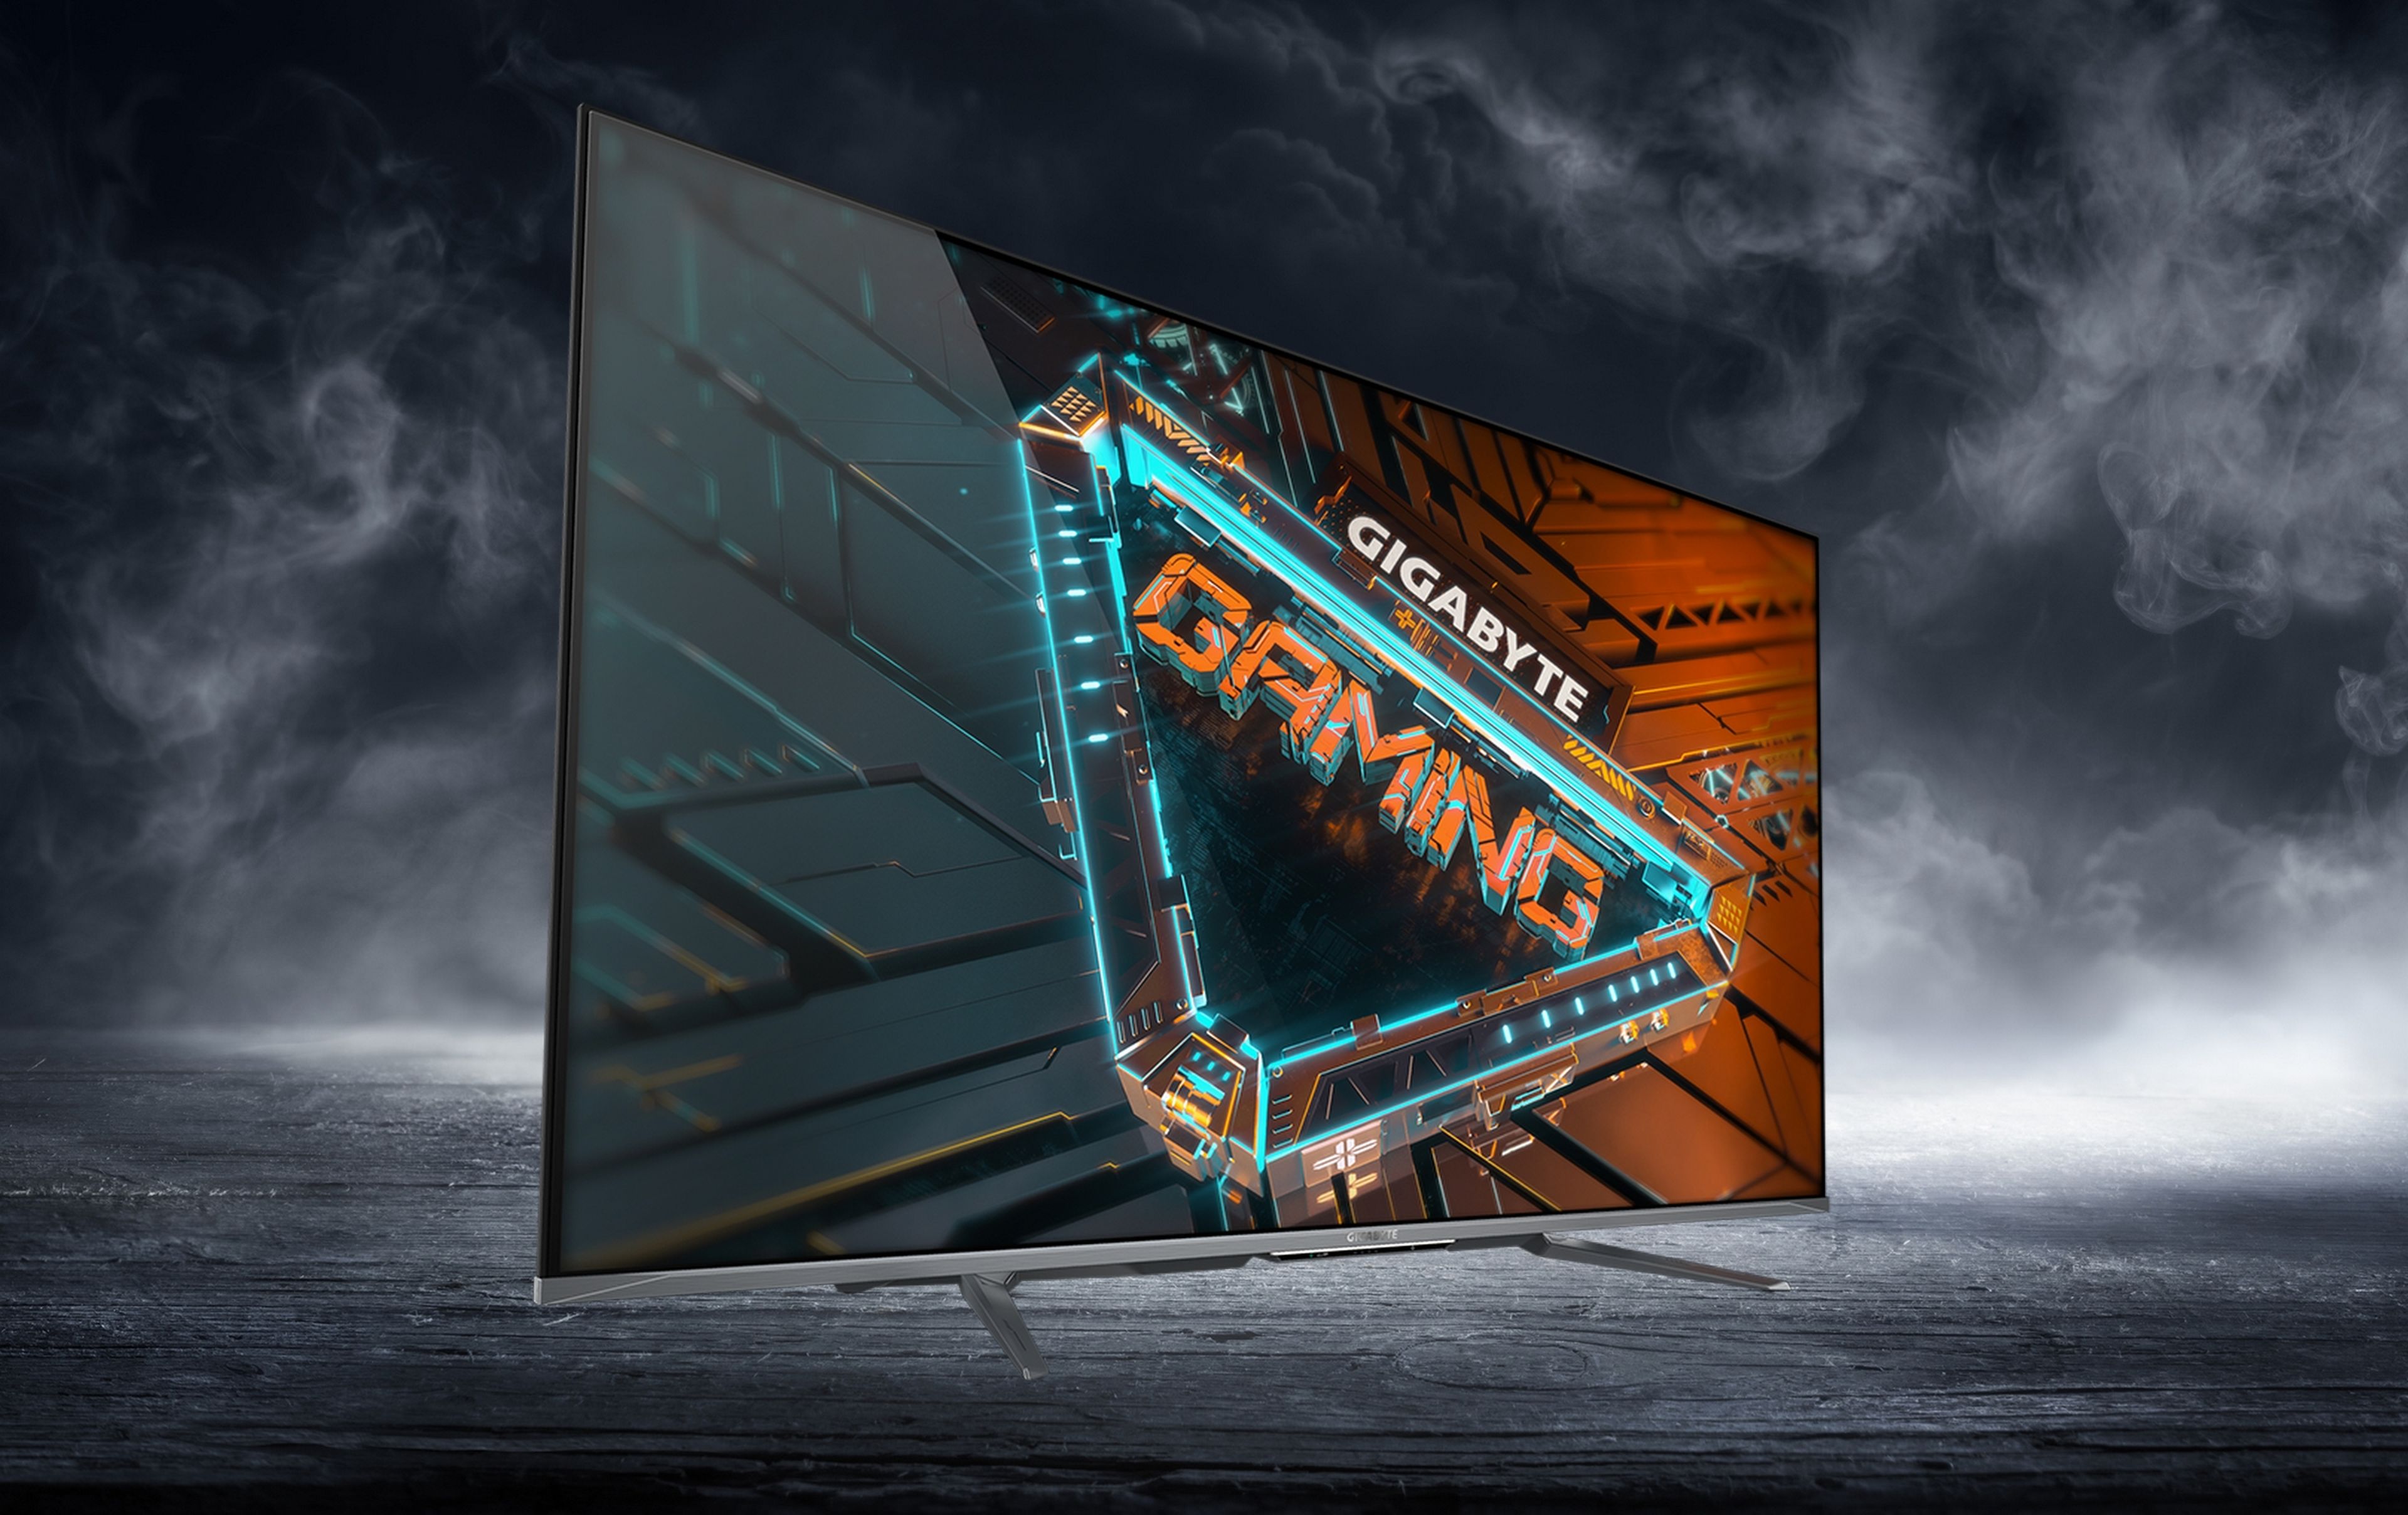 Gigabyte lanza un inmenso monitor gaming híbrido de 54 pulgadas con resolución 4K a 120 Hz, Android OS y Chromecast